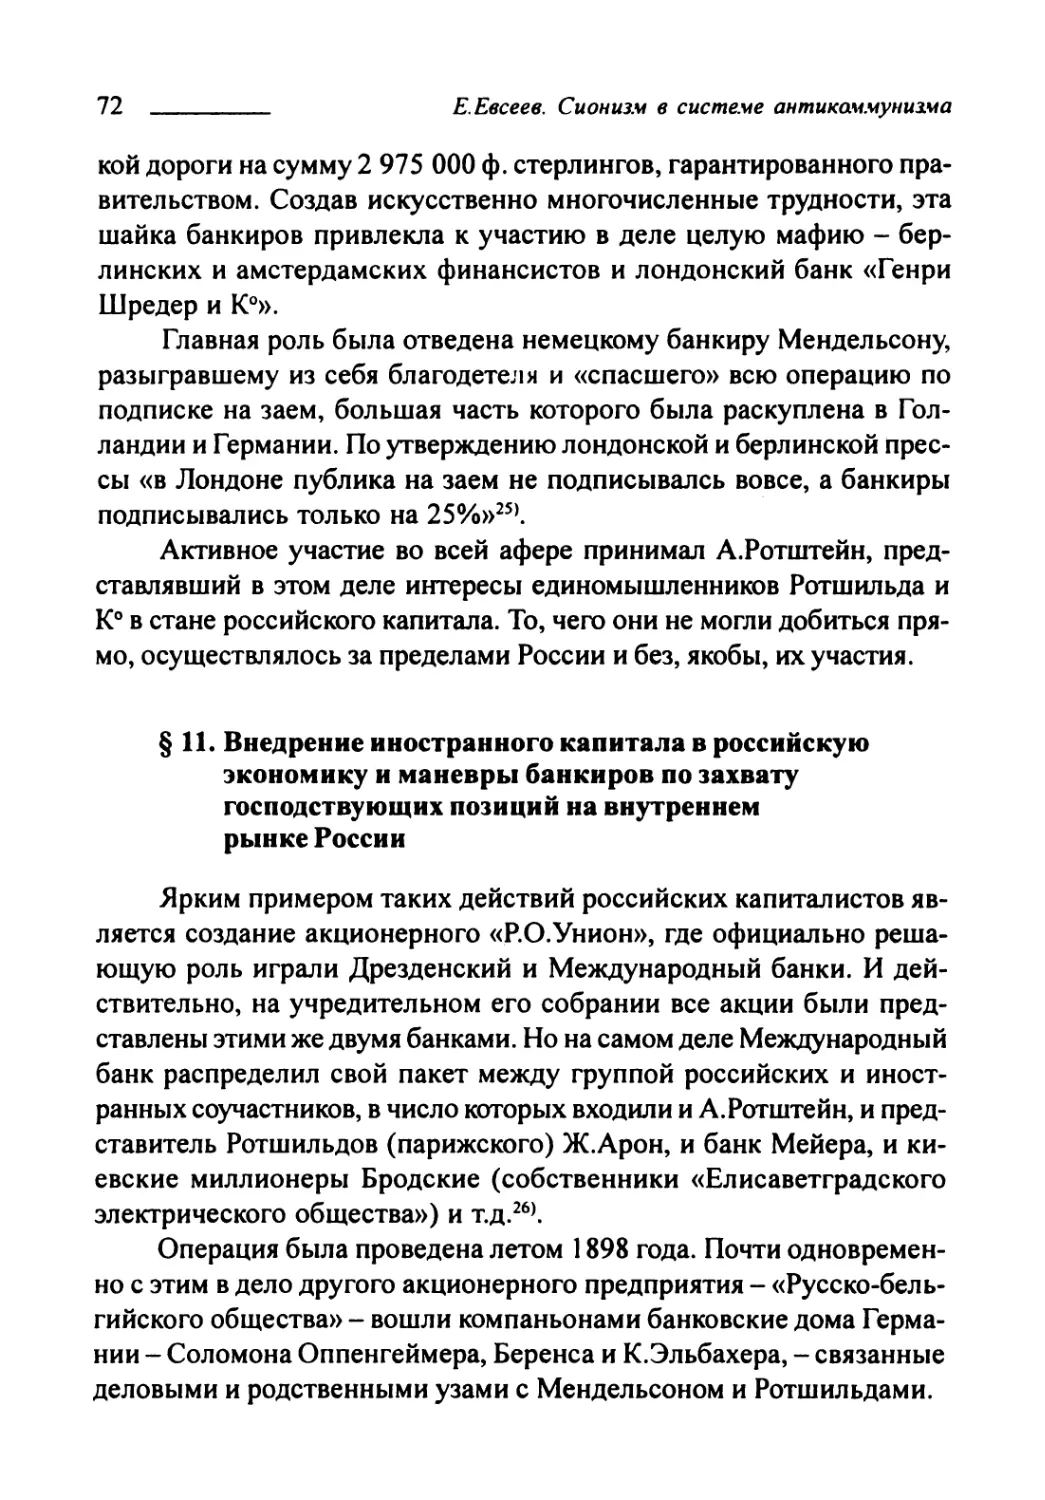 § 11. Внедрение иностранного капитала в российскую экономику и манёвры банкиров по захвату господствующих позиций на внутреннем рынке России